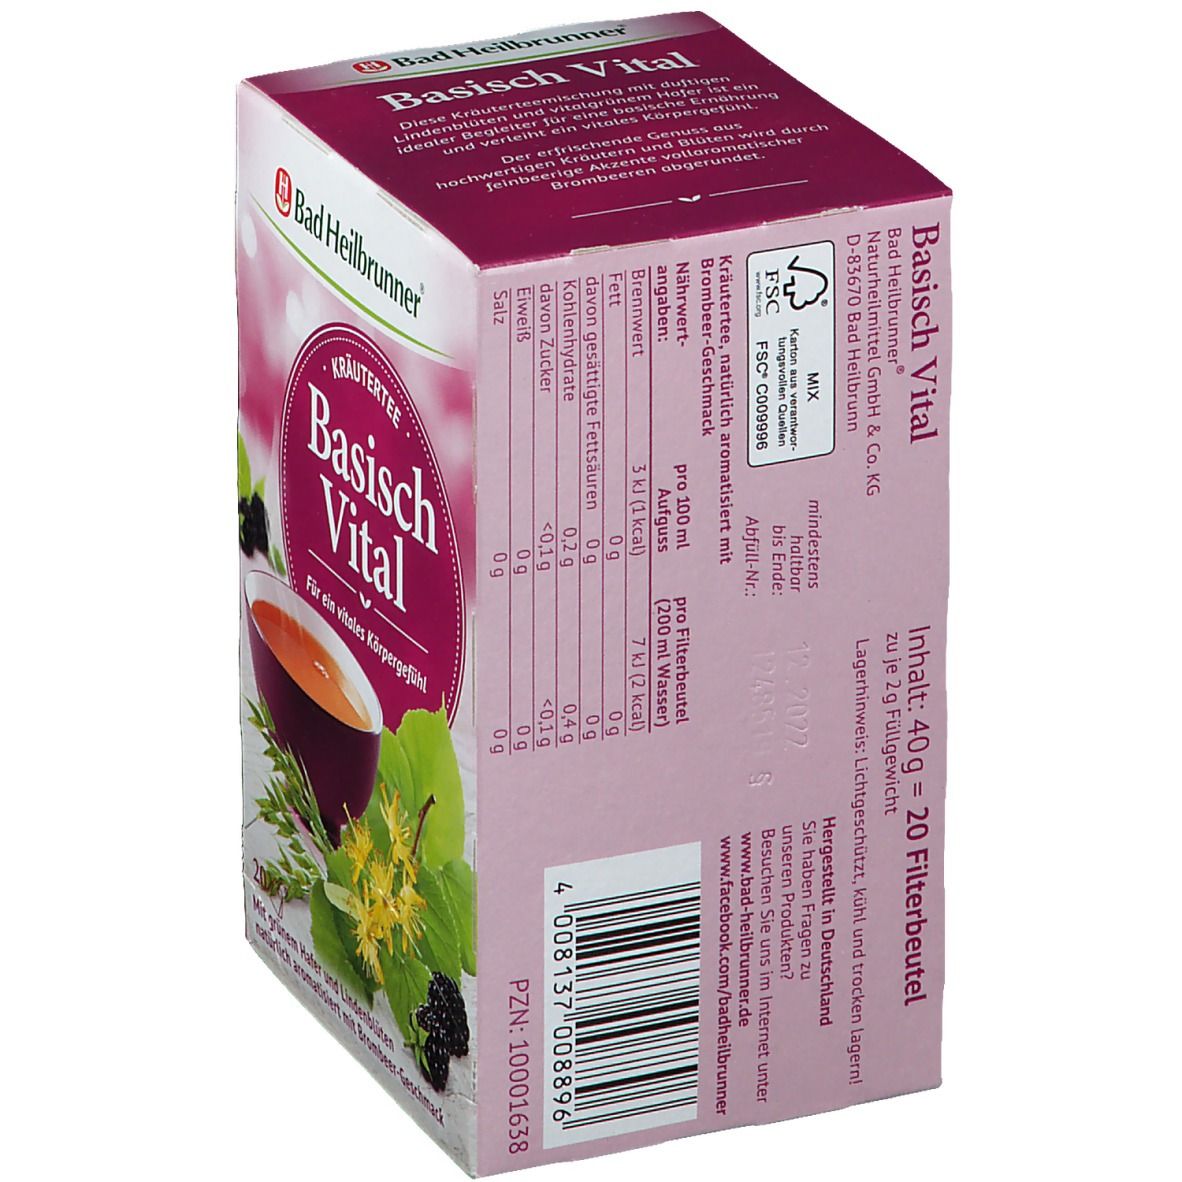 Bad Heilbrunner® Alkaline Vital Herbal Tea